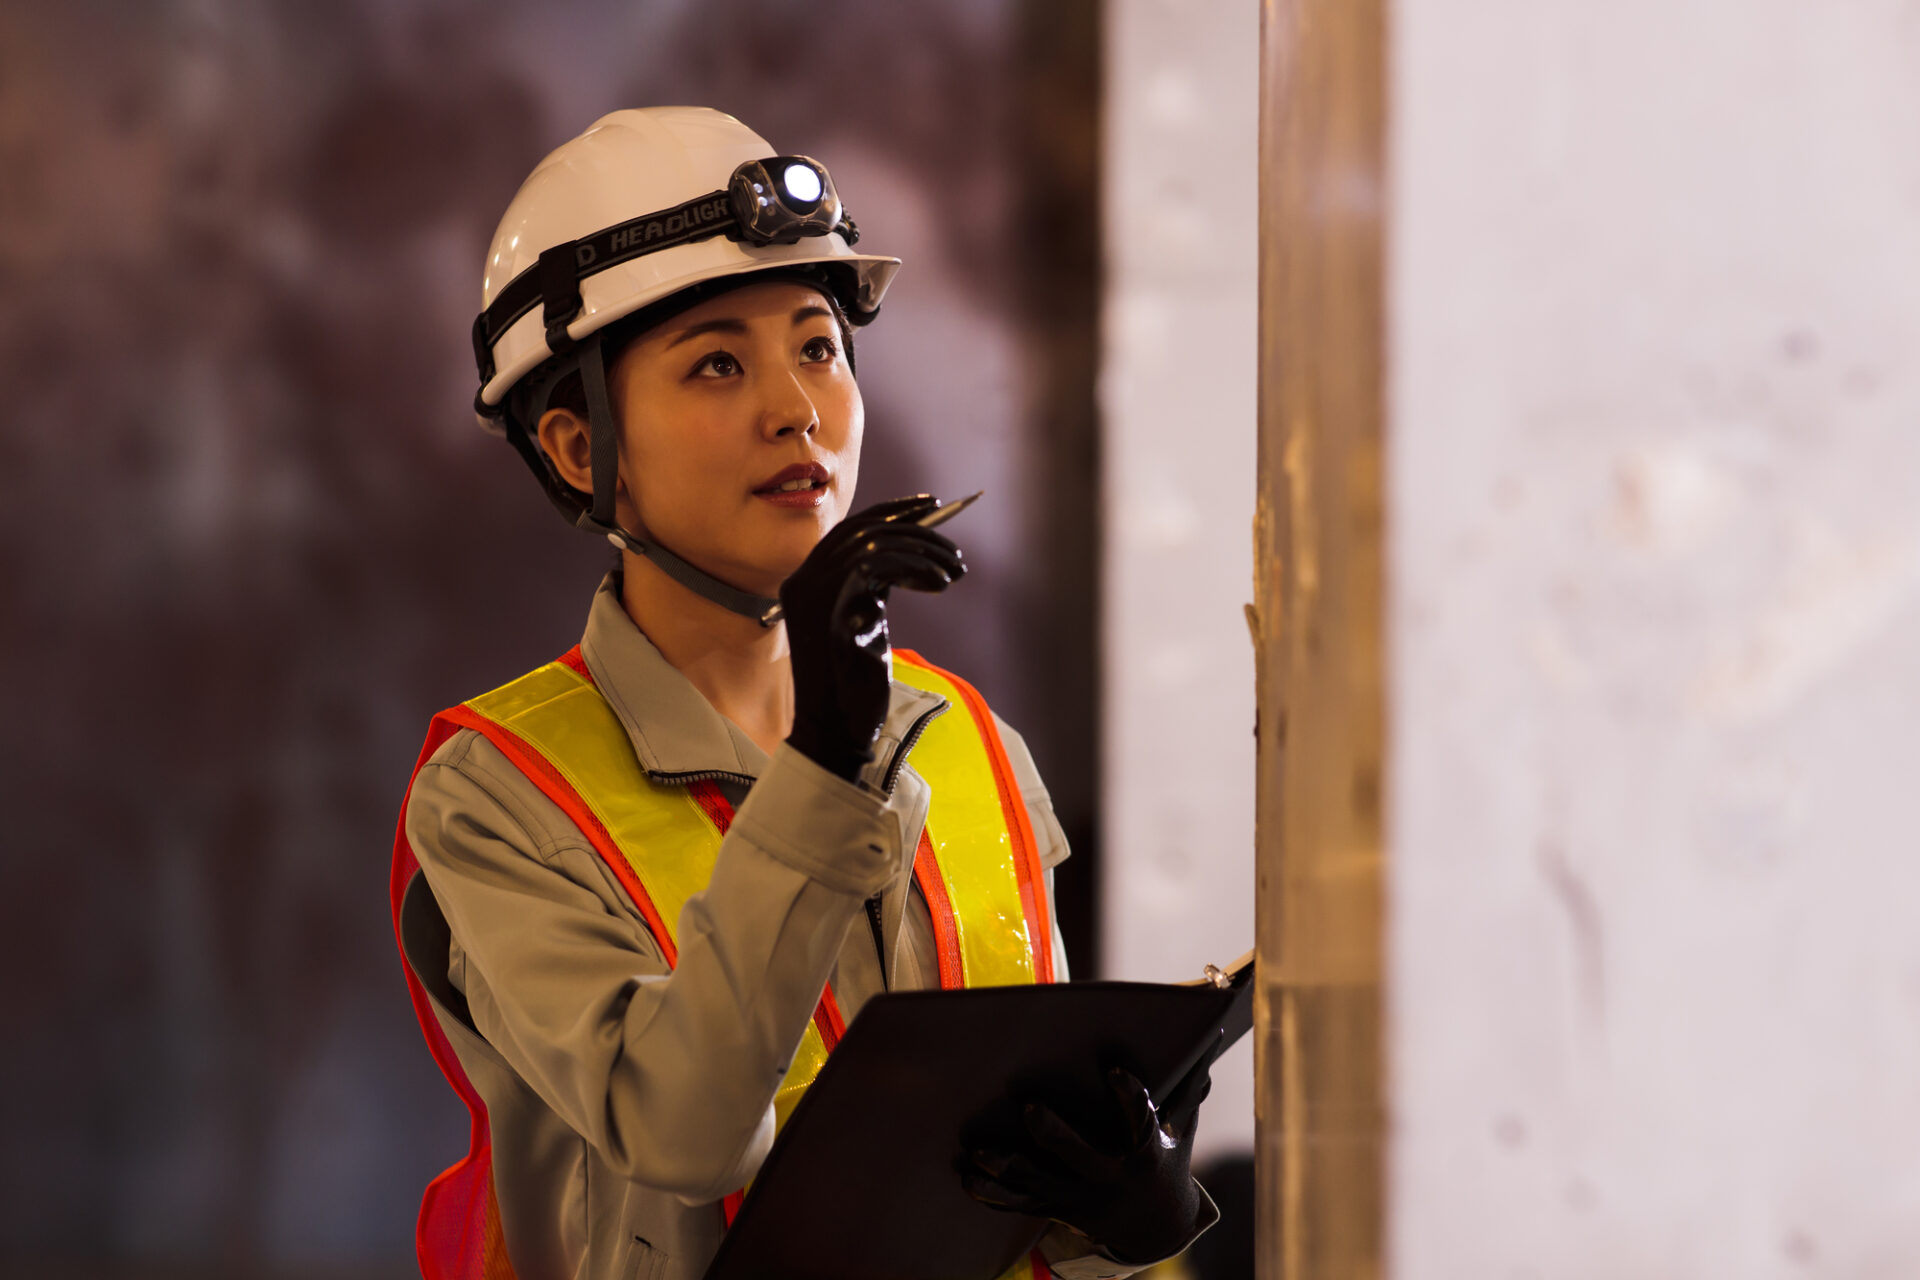 施工状況や作業環境をチェックする製造業の女性従業員